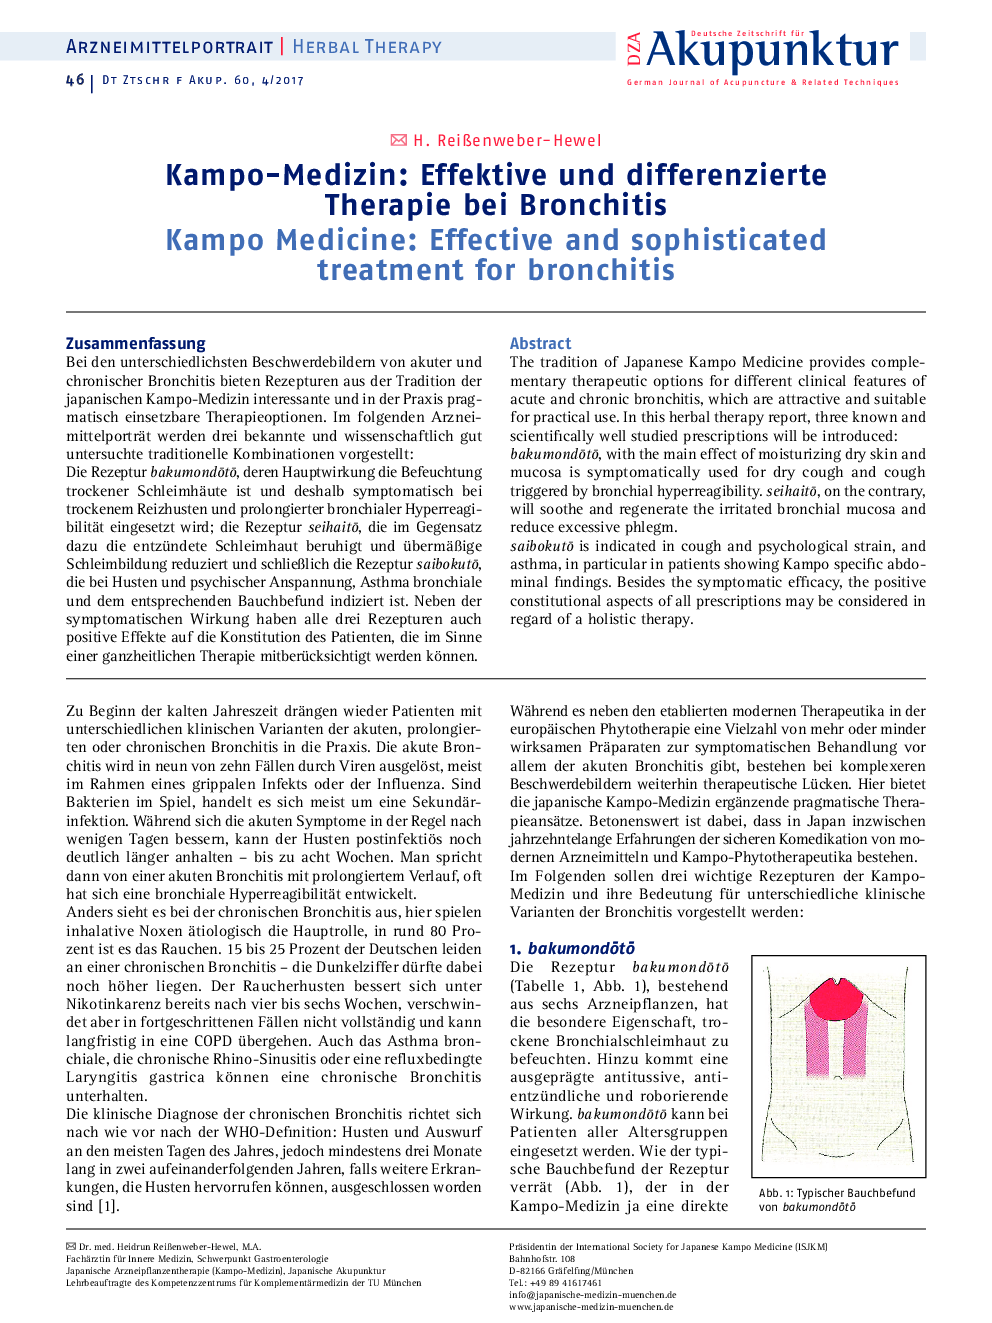 Kampo-Medizin: Effektive und differenzierte Therapie bei Bronchitis